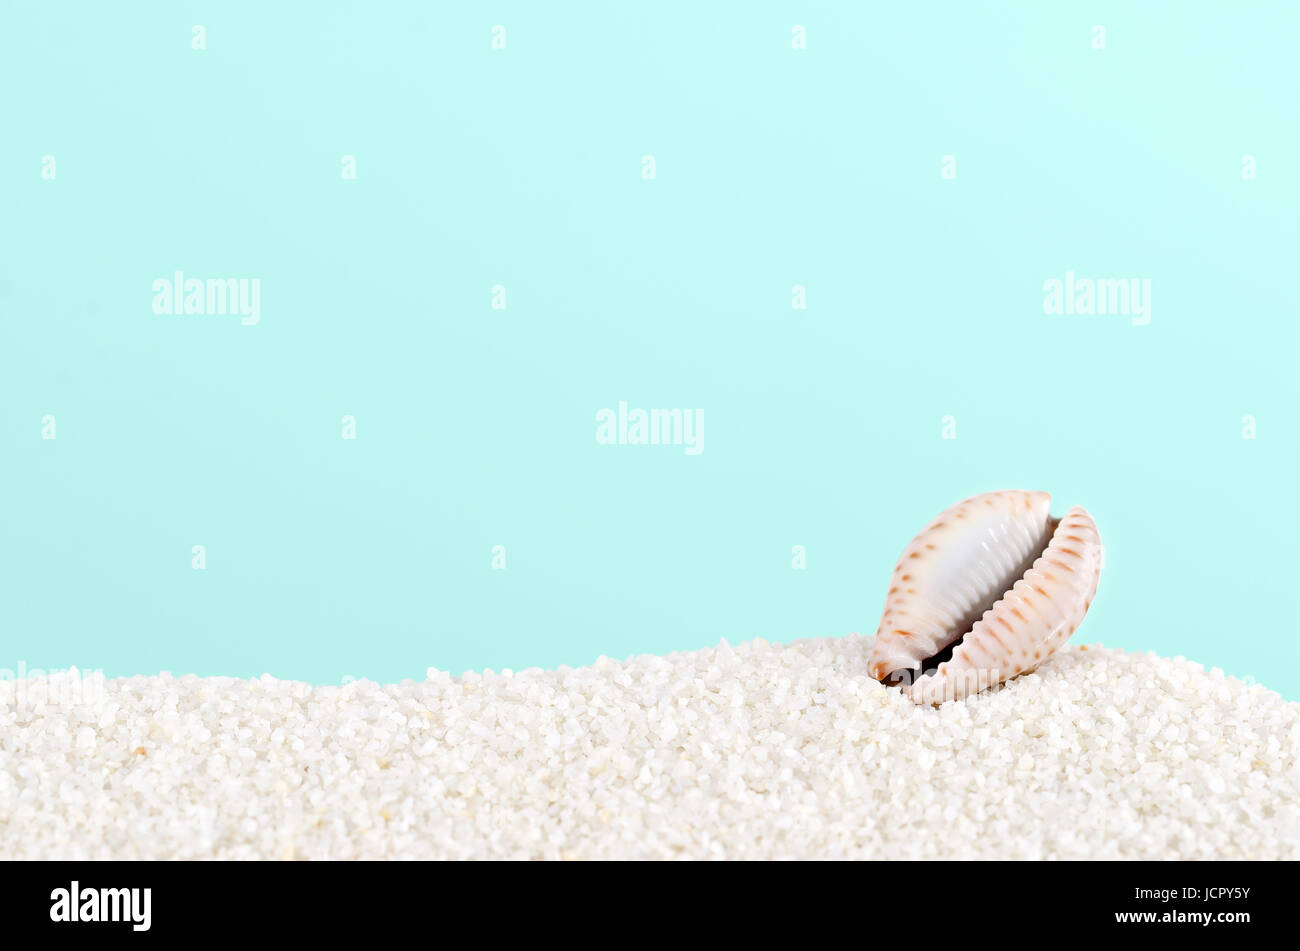 Kauri-Muschel auf weißem Sand auf Türkis Hintergrund. Meeresschnecke, marine Gastropode Molluske. Die Unterseite zeigt öffnen, Blende, an Rändern gezähnt. Stockfoto